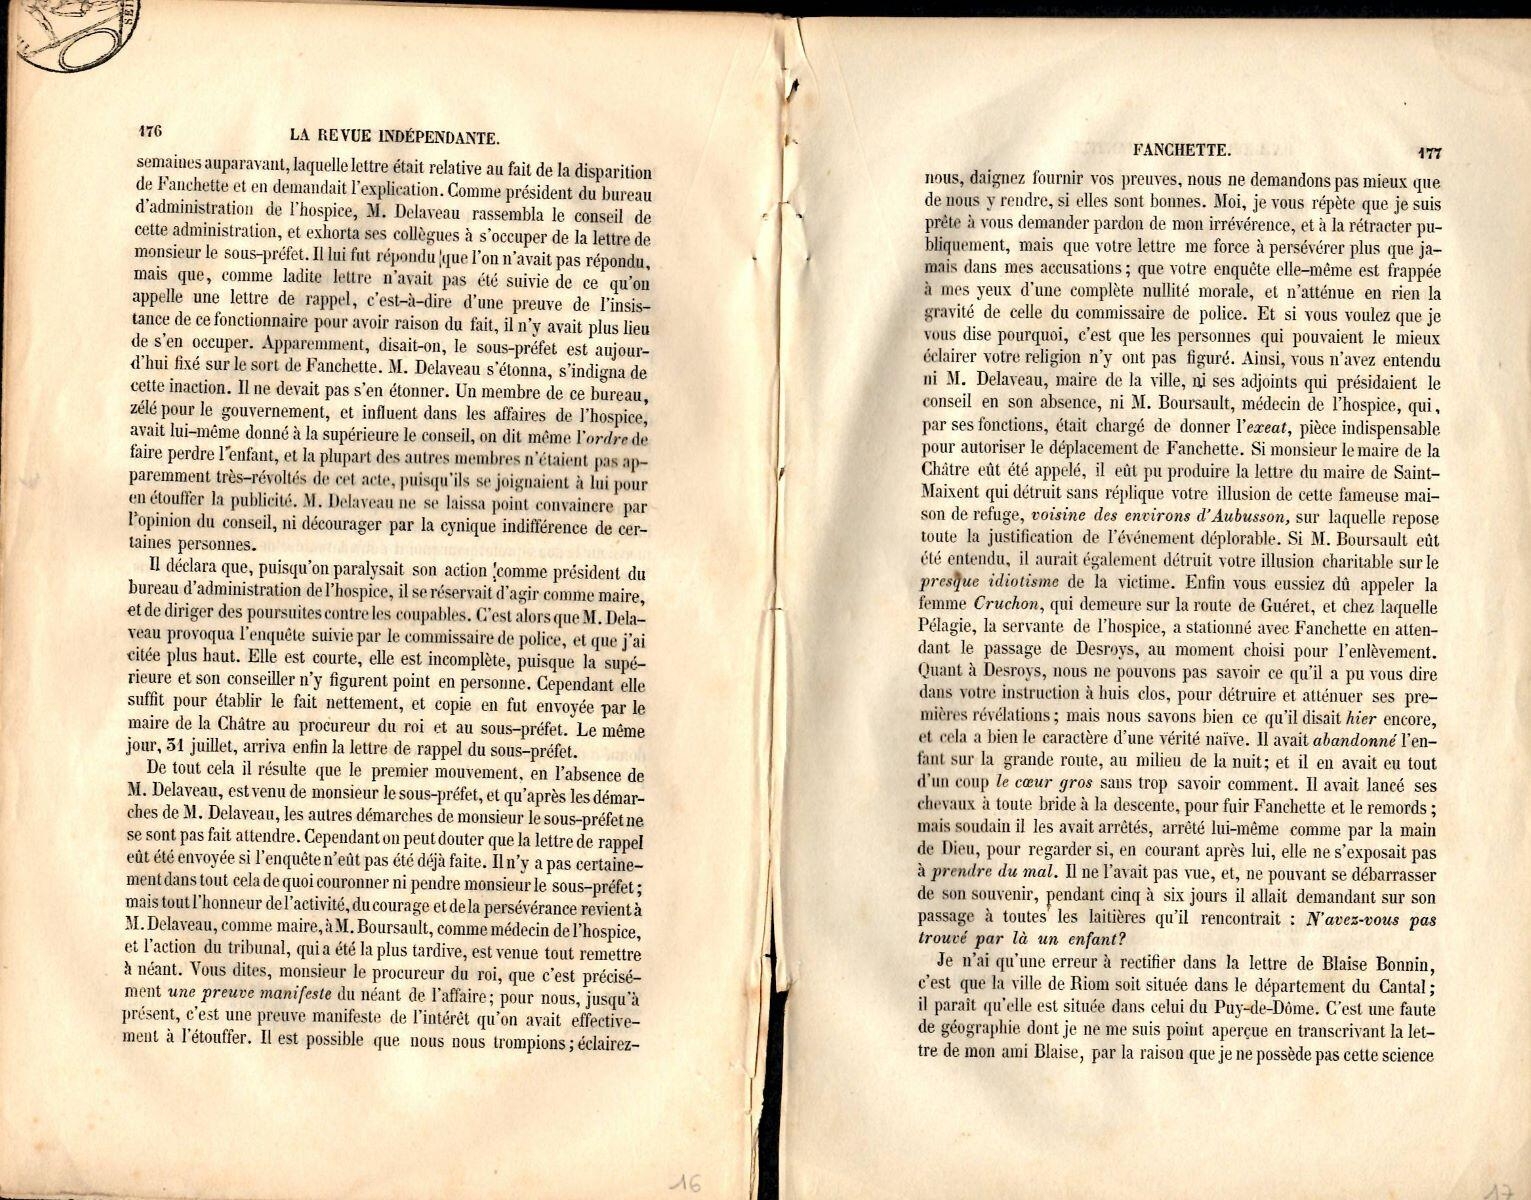 Fanchette, tome 11, Revue Indépendante, novembre + 1 page de dictionnaire